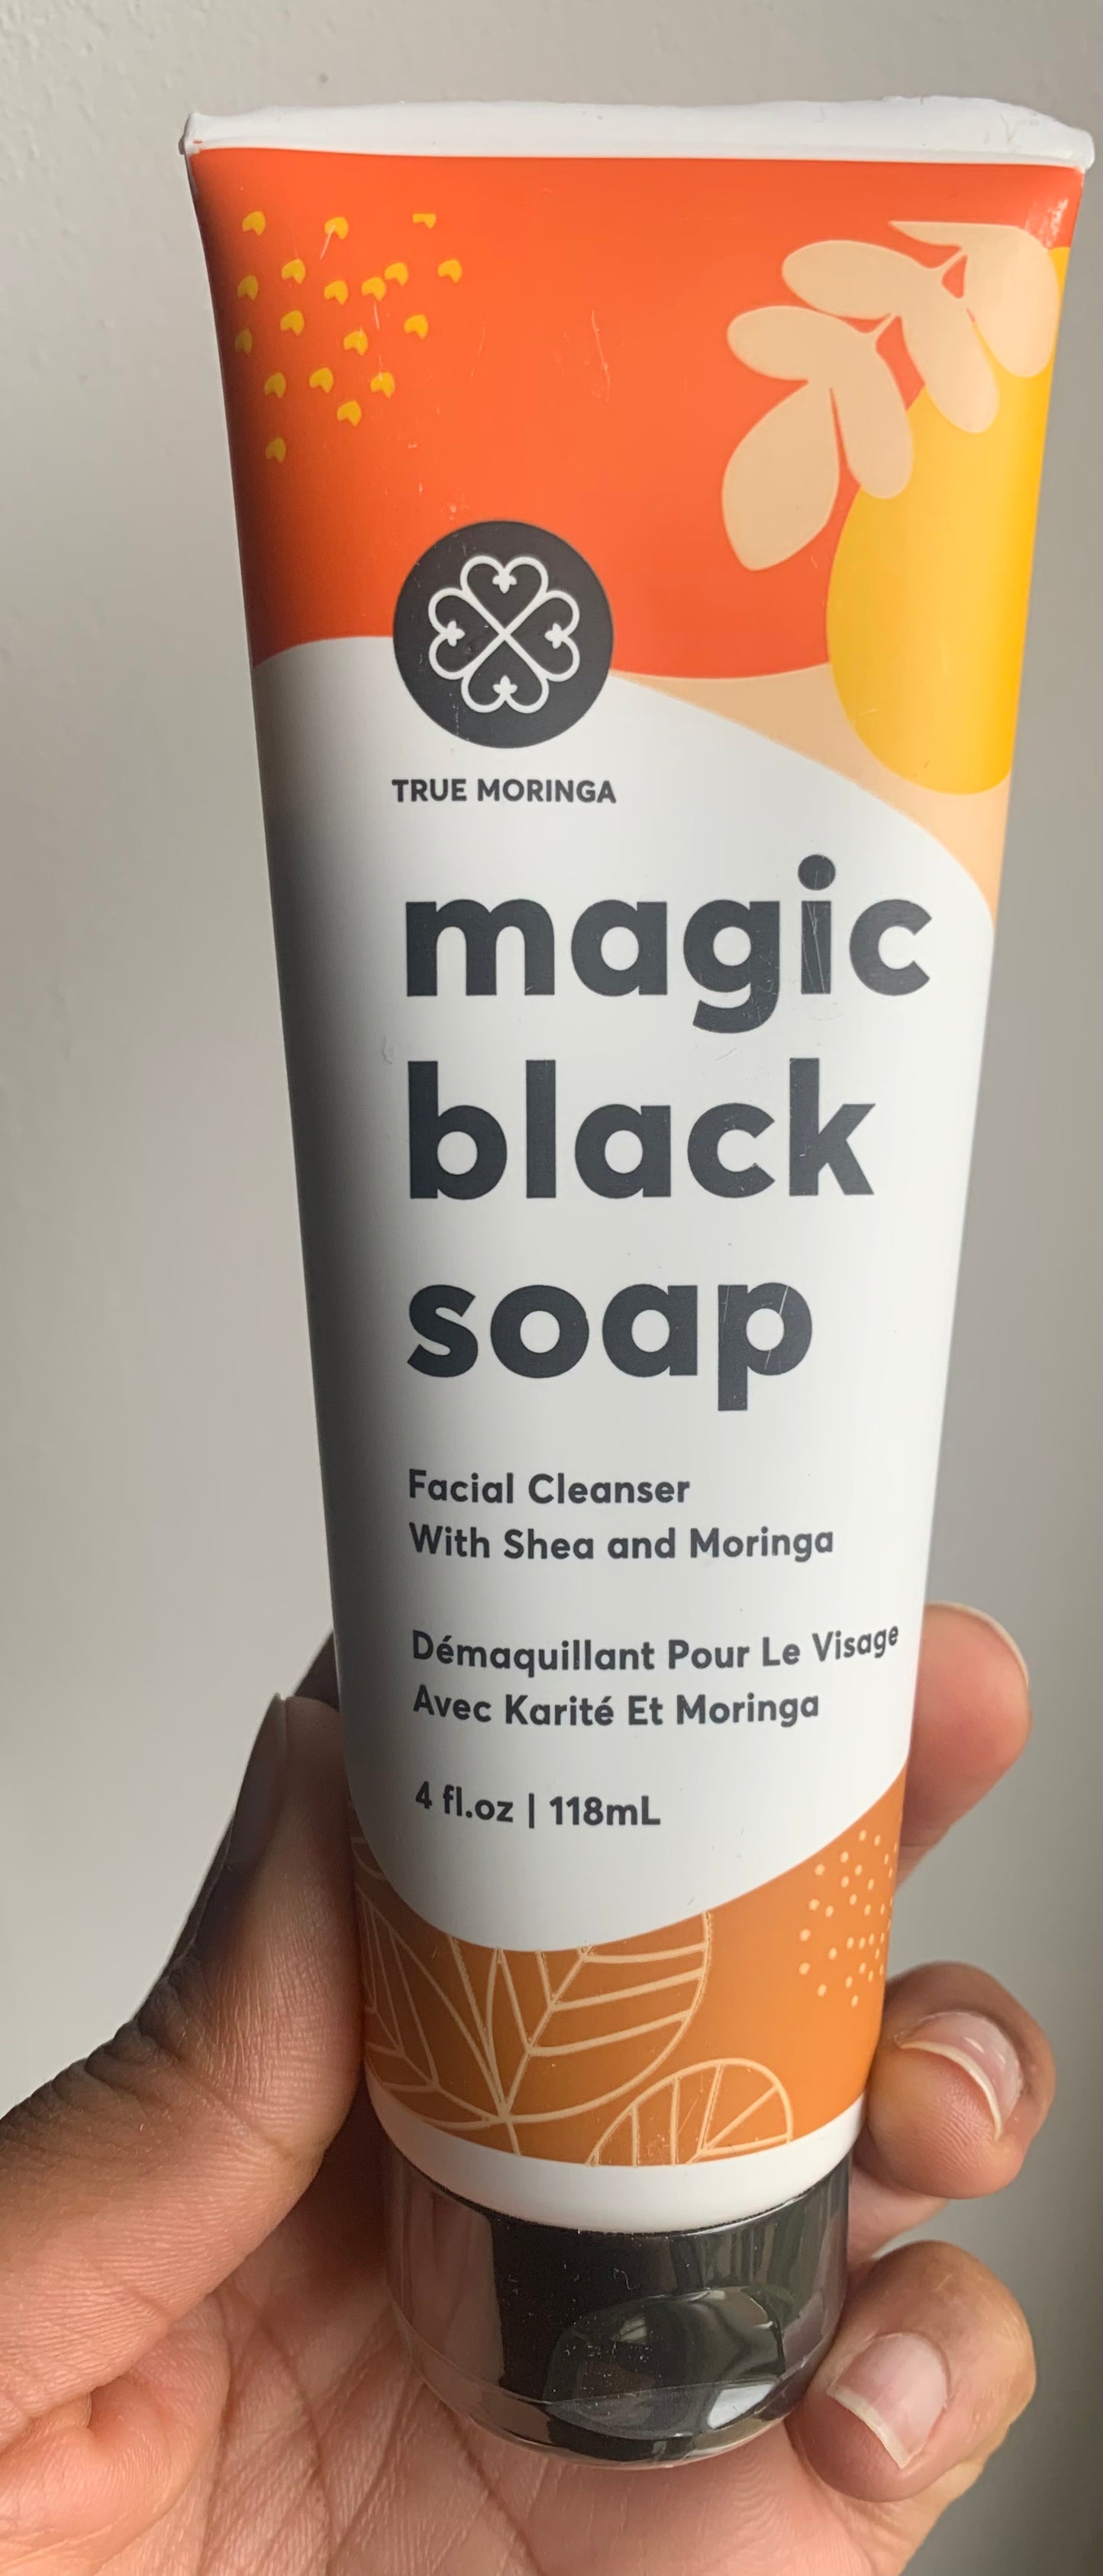 Magic black soap